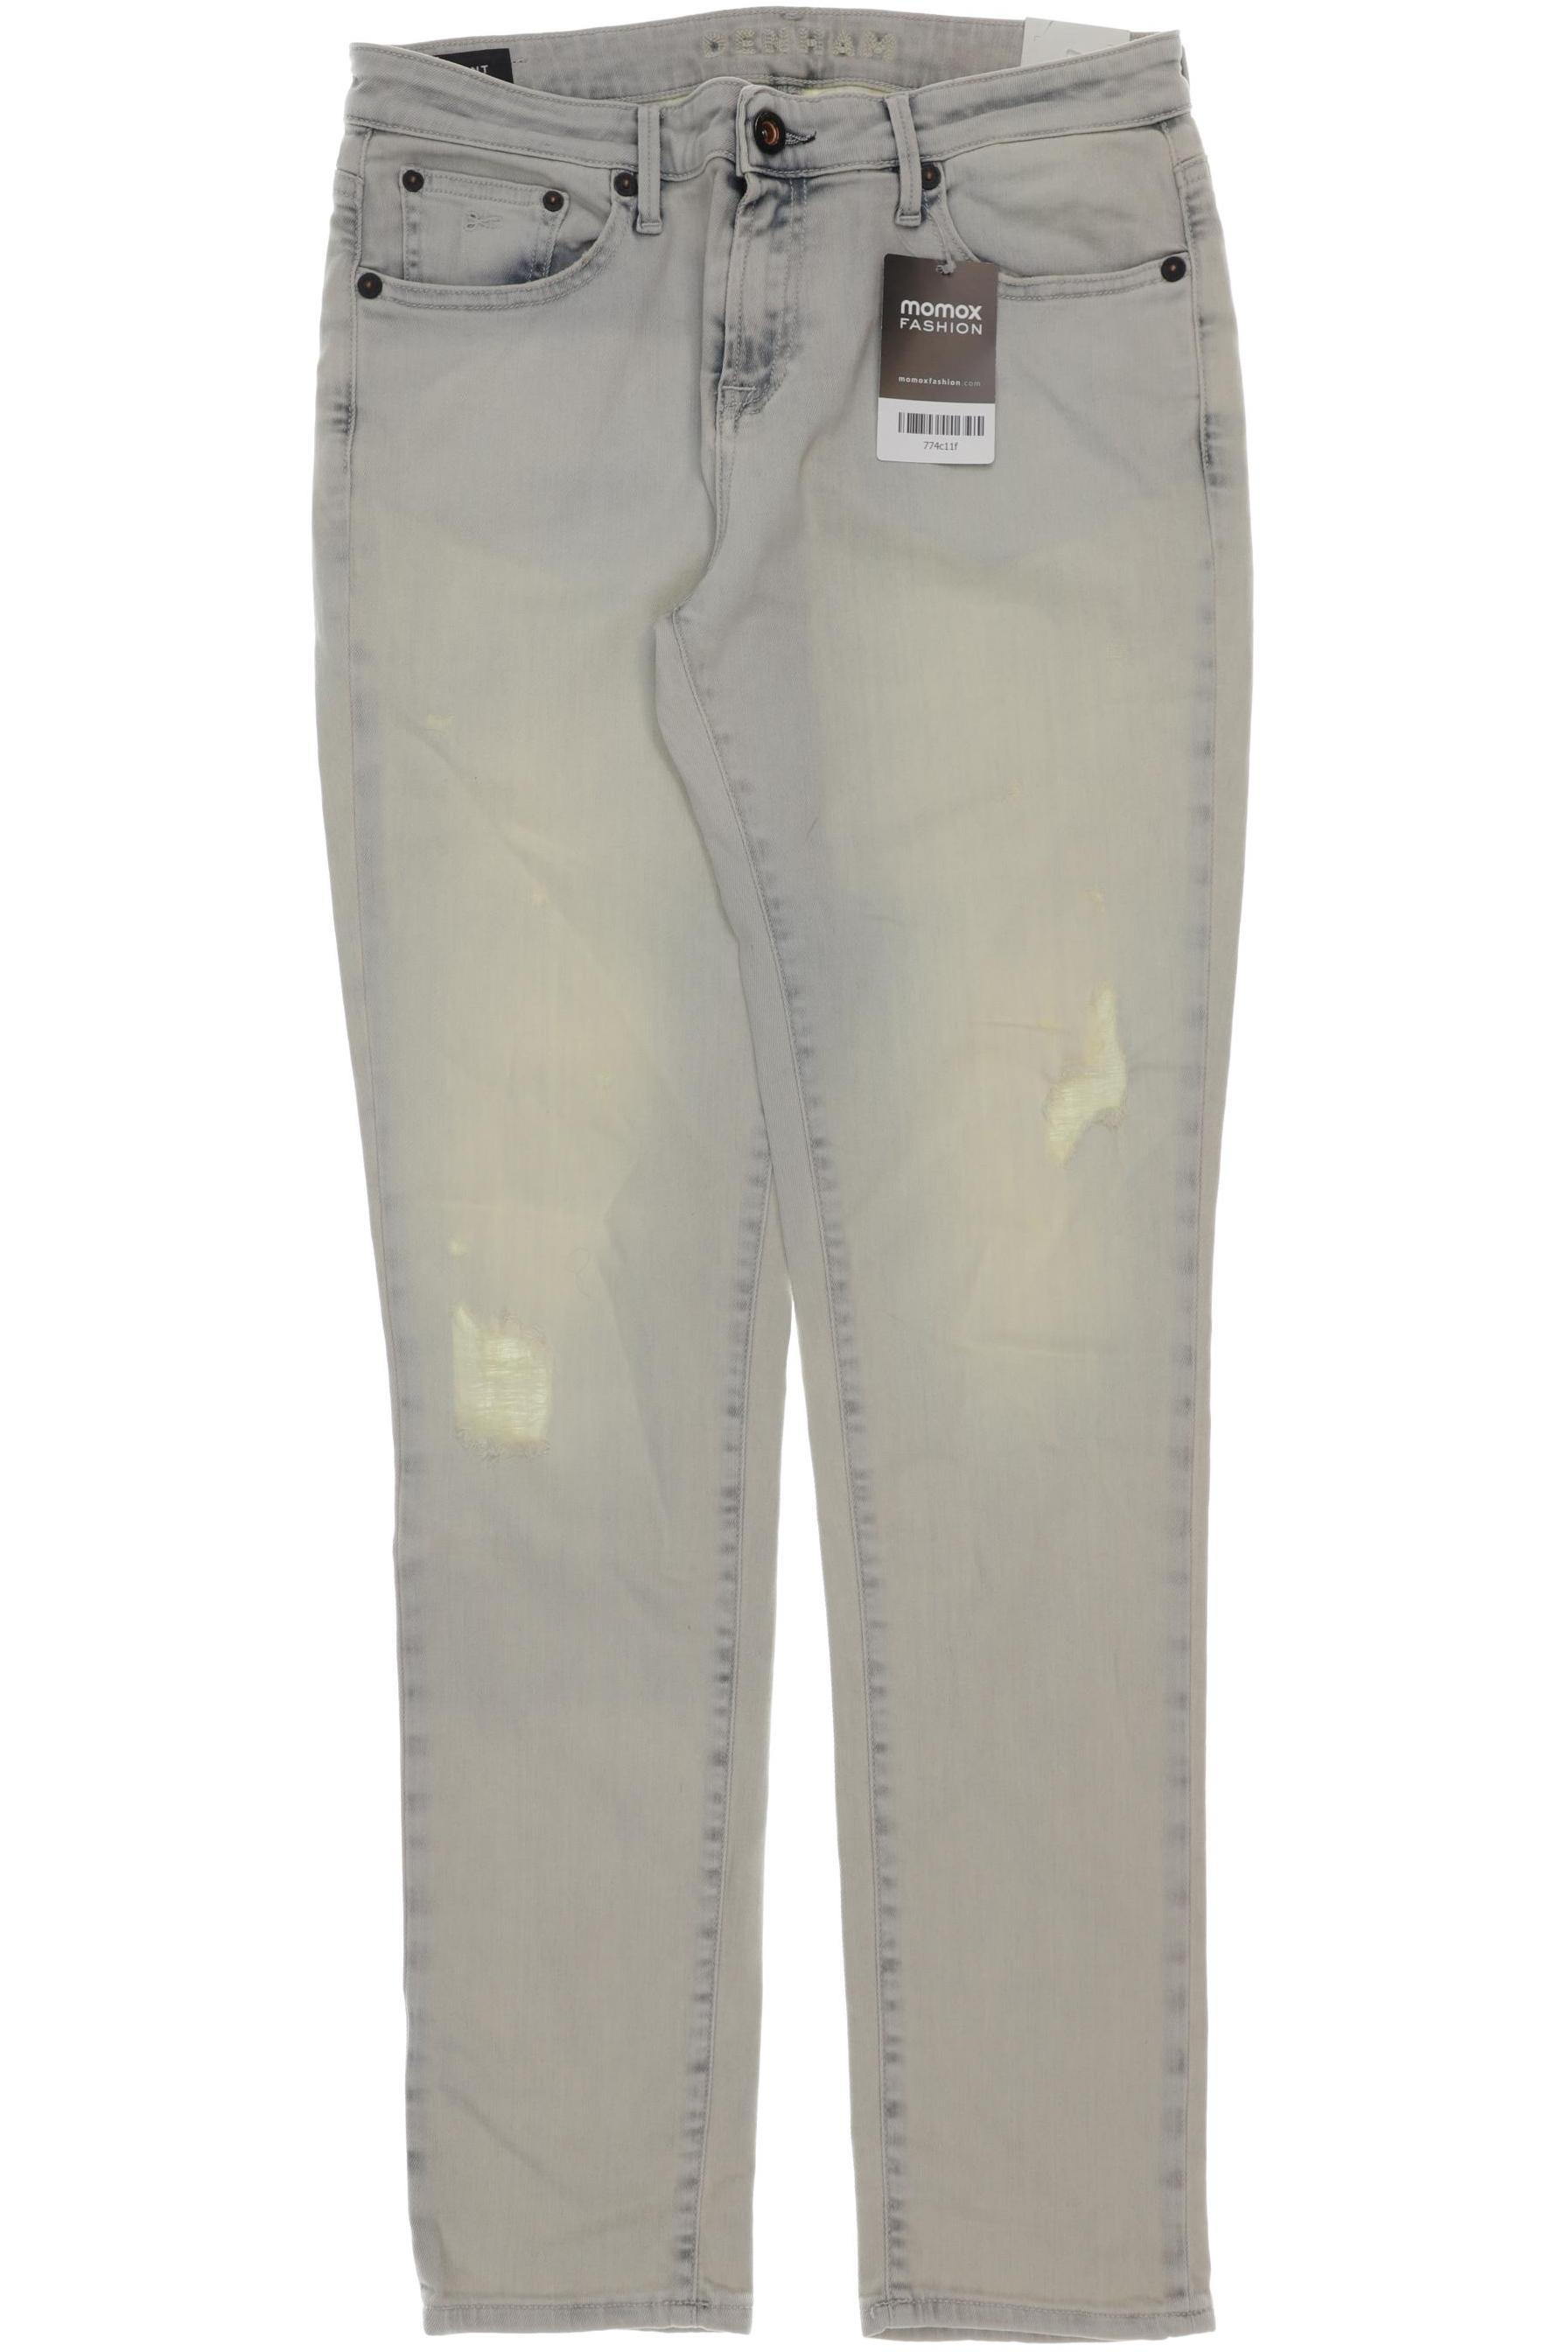 Denham Damen Jeans, beige, Gr. 36 von Denham